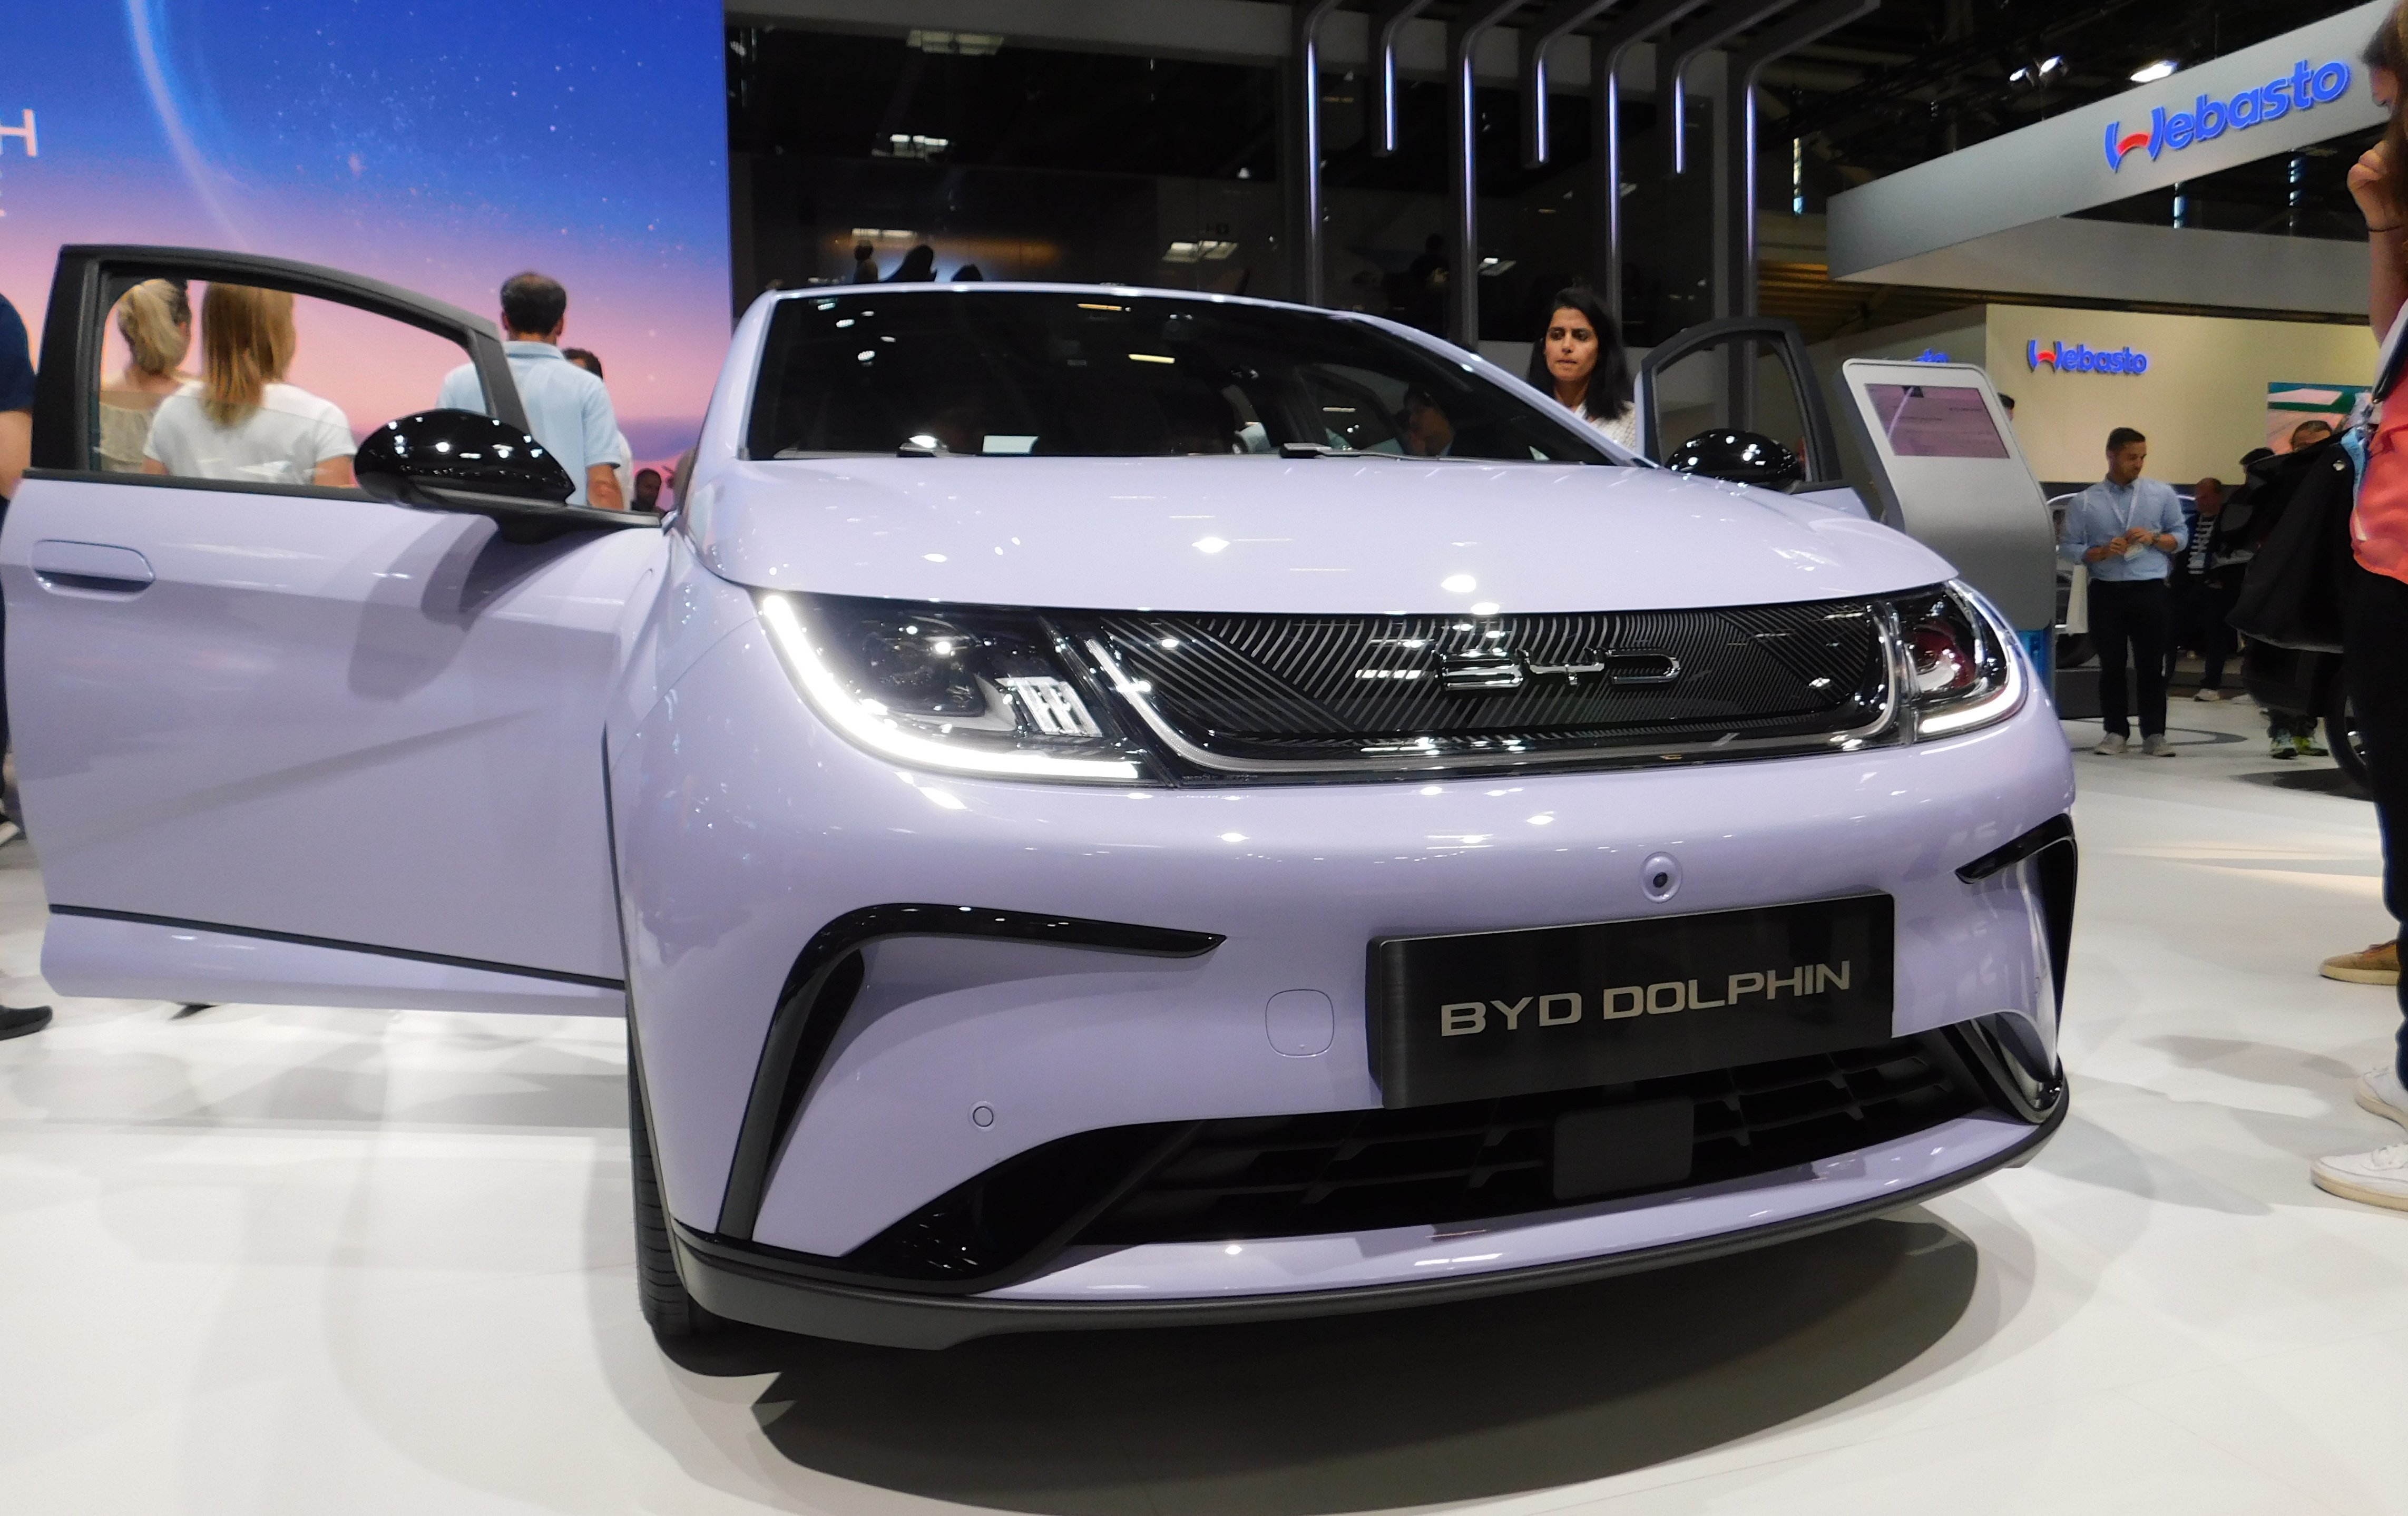 Billige E-Autos aus China? ADAC spricht Klartext